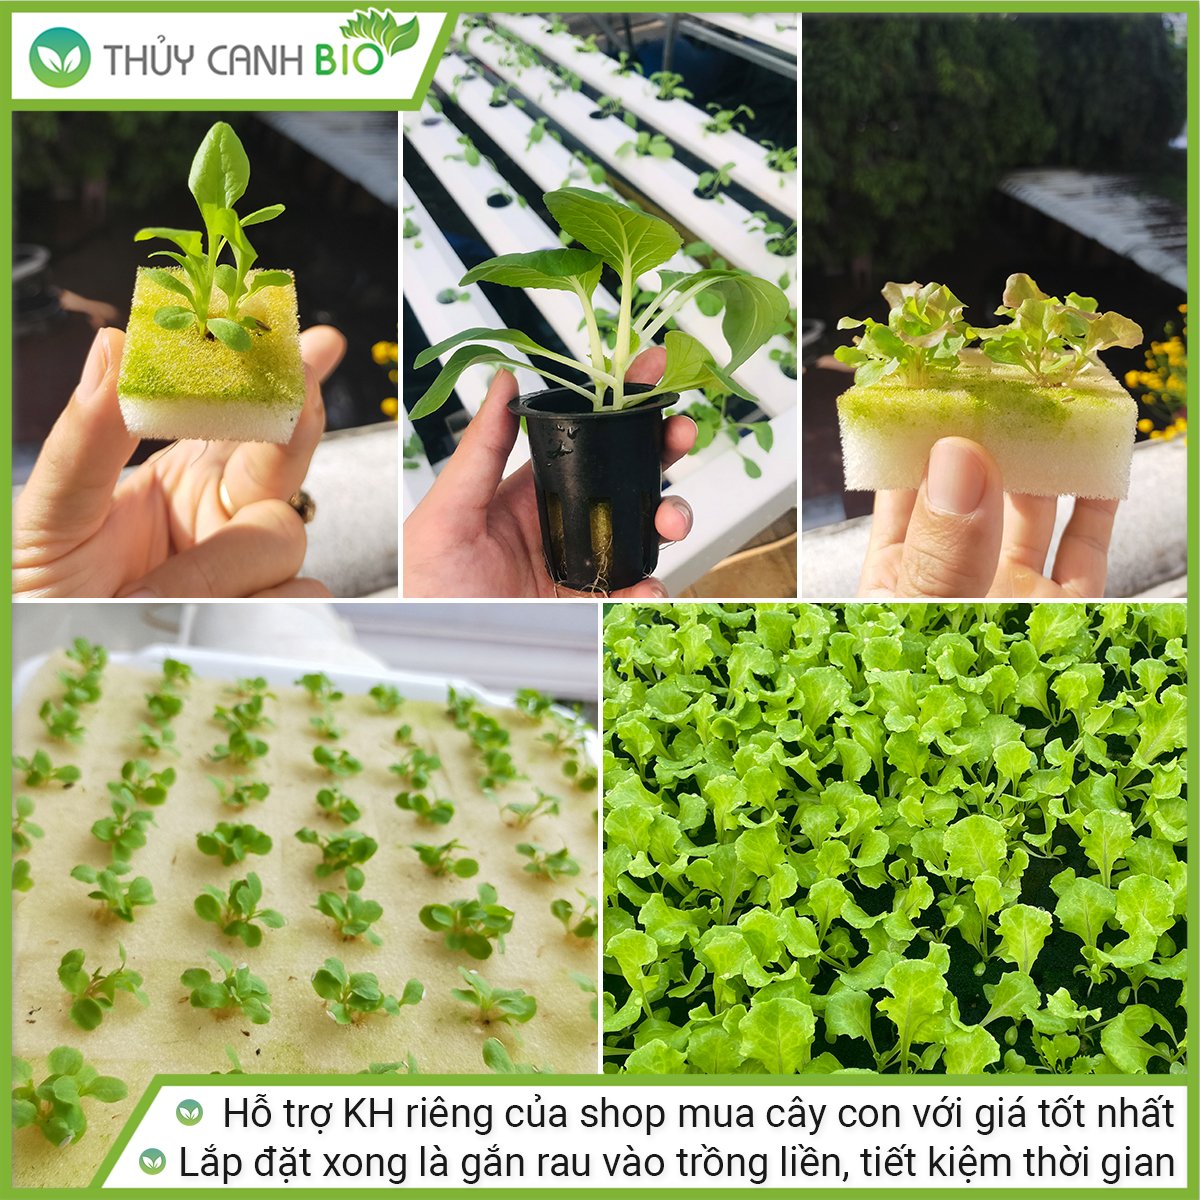 Trụ trồng rau Bio 50 hốc trồng rau, giữ nước và chống cúp điện phiên bản mới